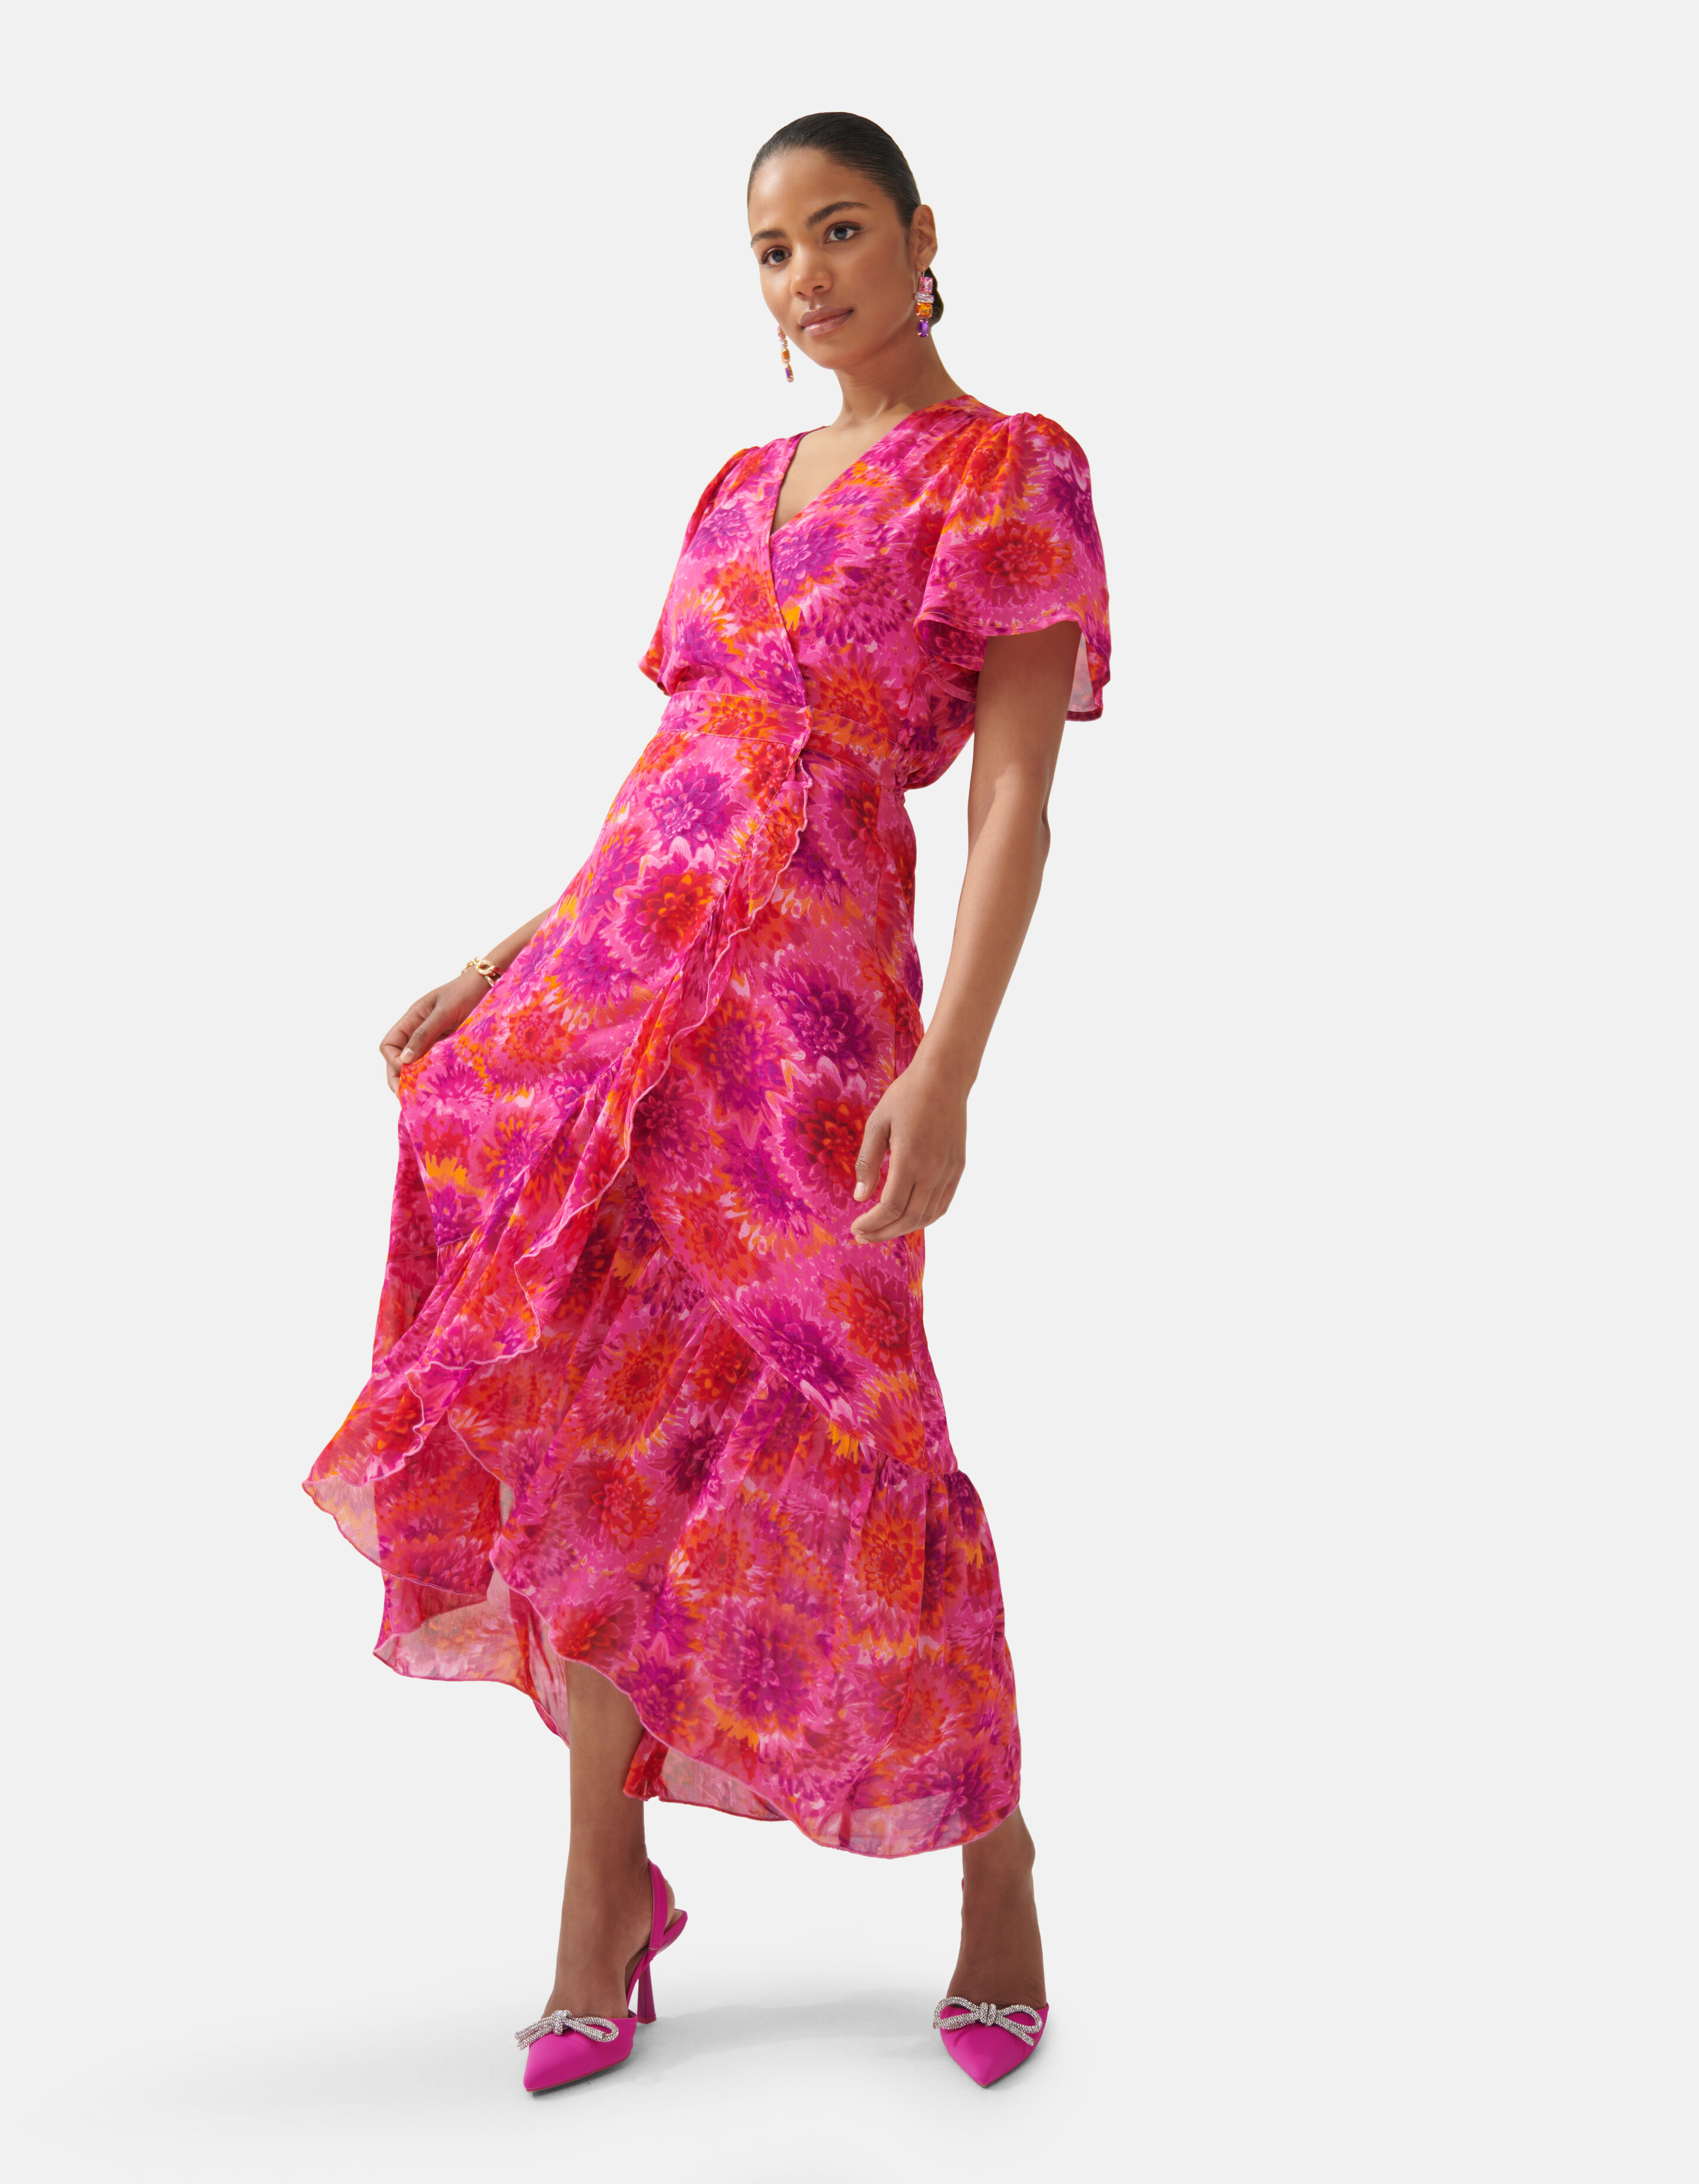 Bedrucktes Kleid Pink By Fred SHOEBY WOMEN